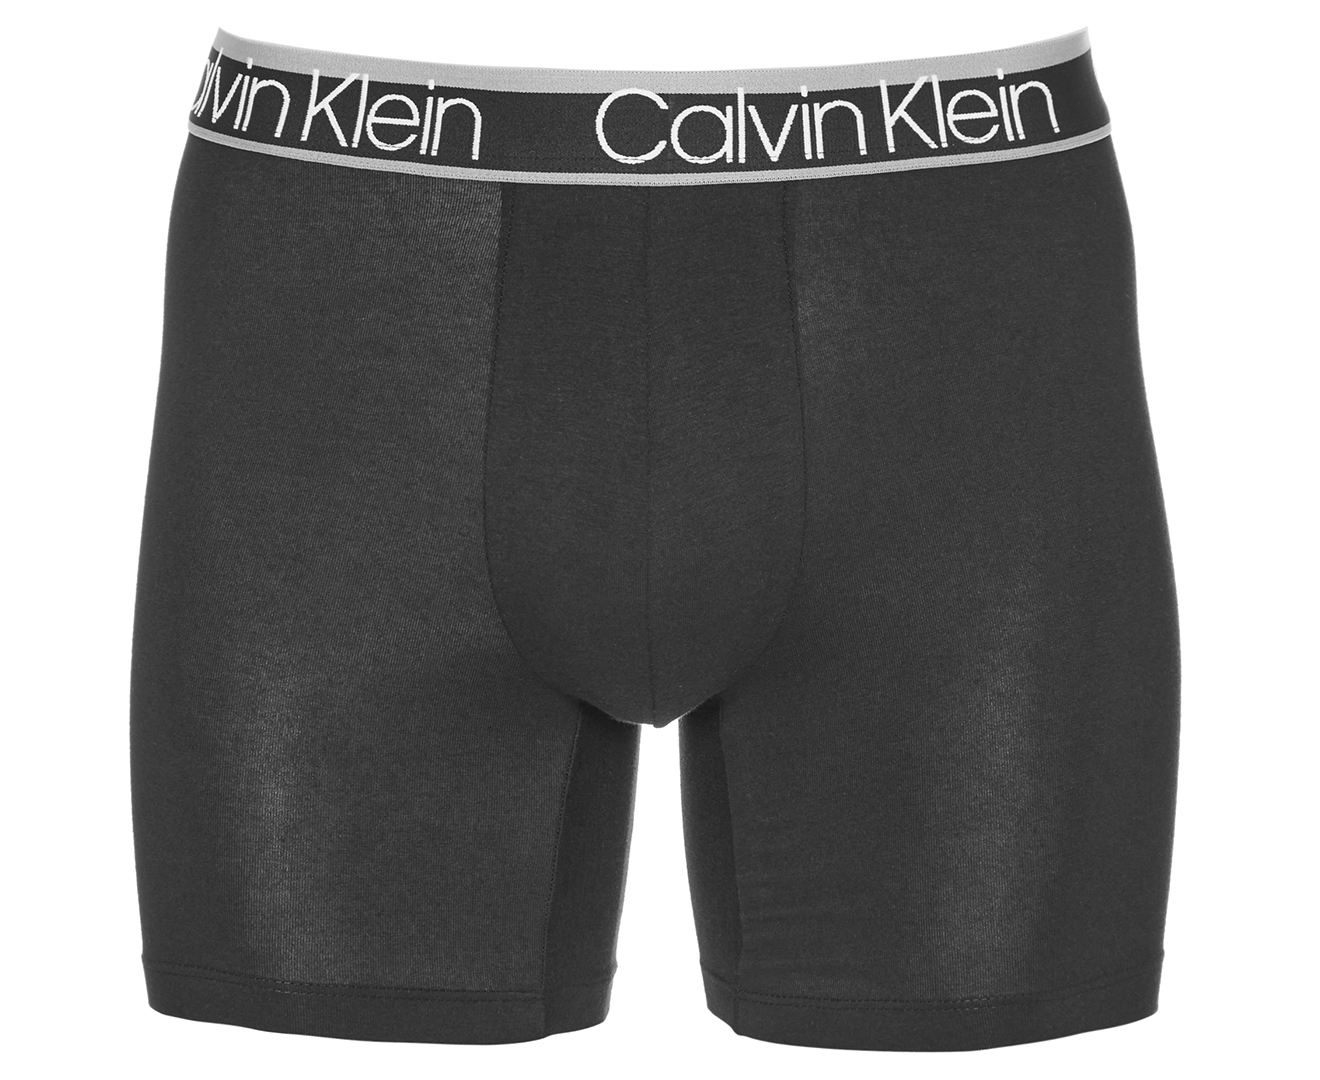 Calvin Klein Men's Variety Waistband Cotton Stretch Boxer Briefs 3-Pack ...